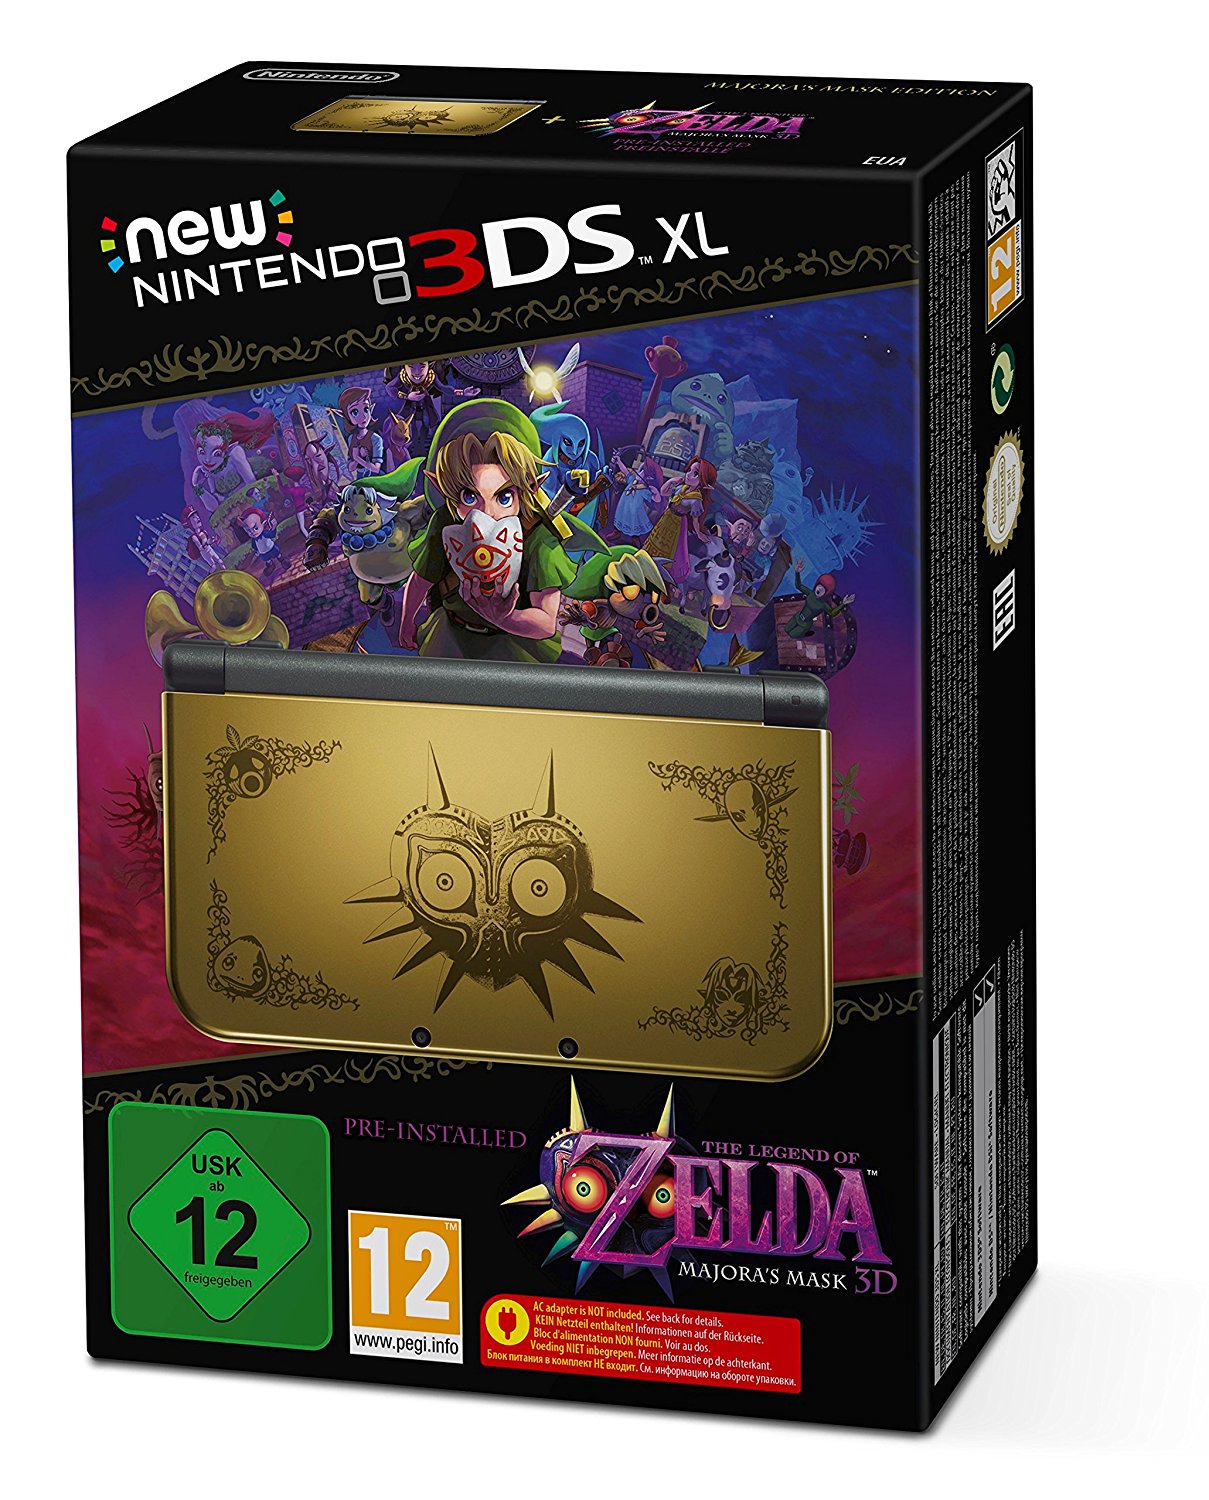 New Nintendo 3DS XL Konsole inkl. Legend of Zelda: Majora's Mask 3D - Gold